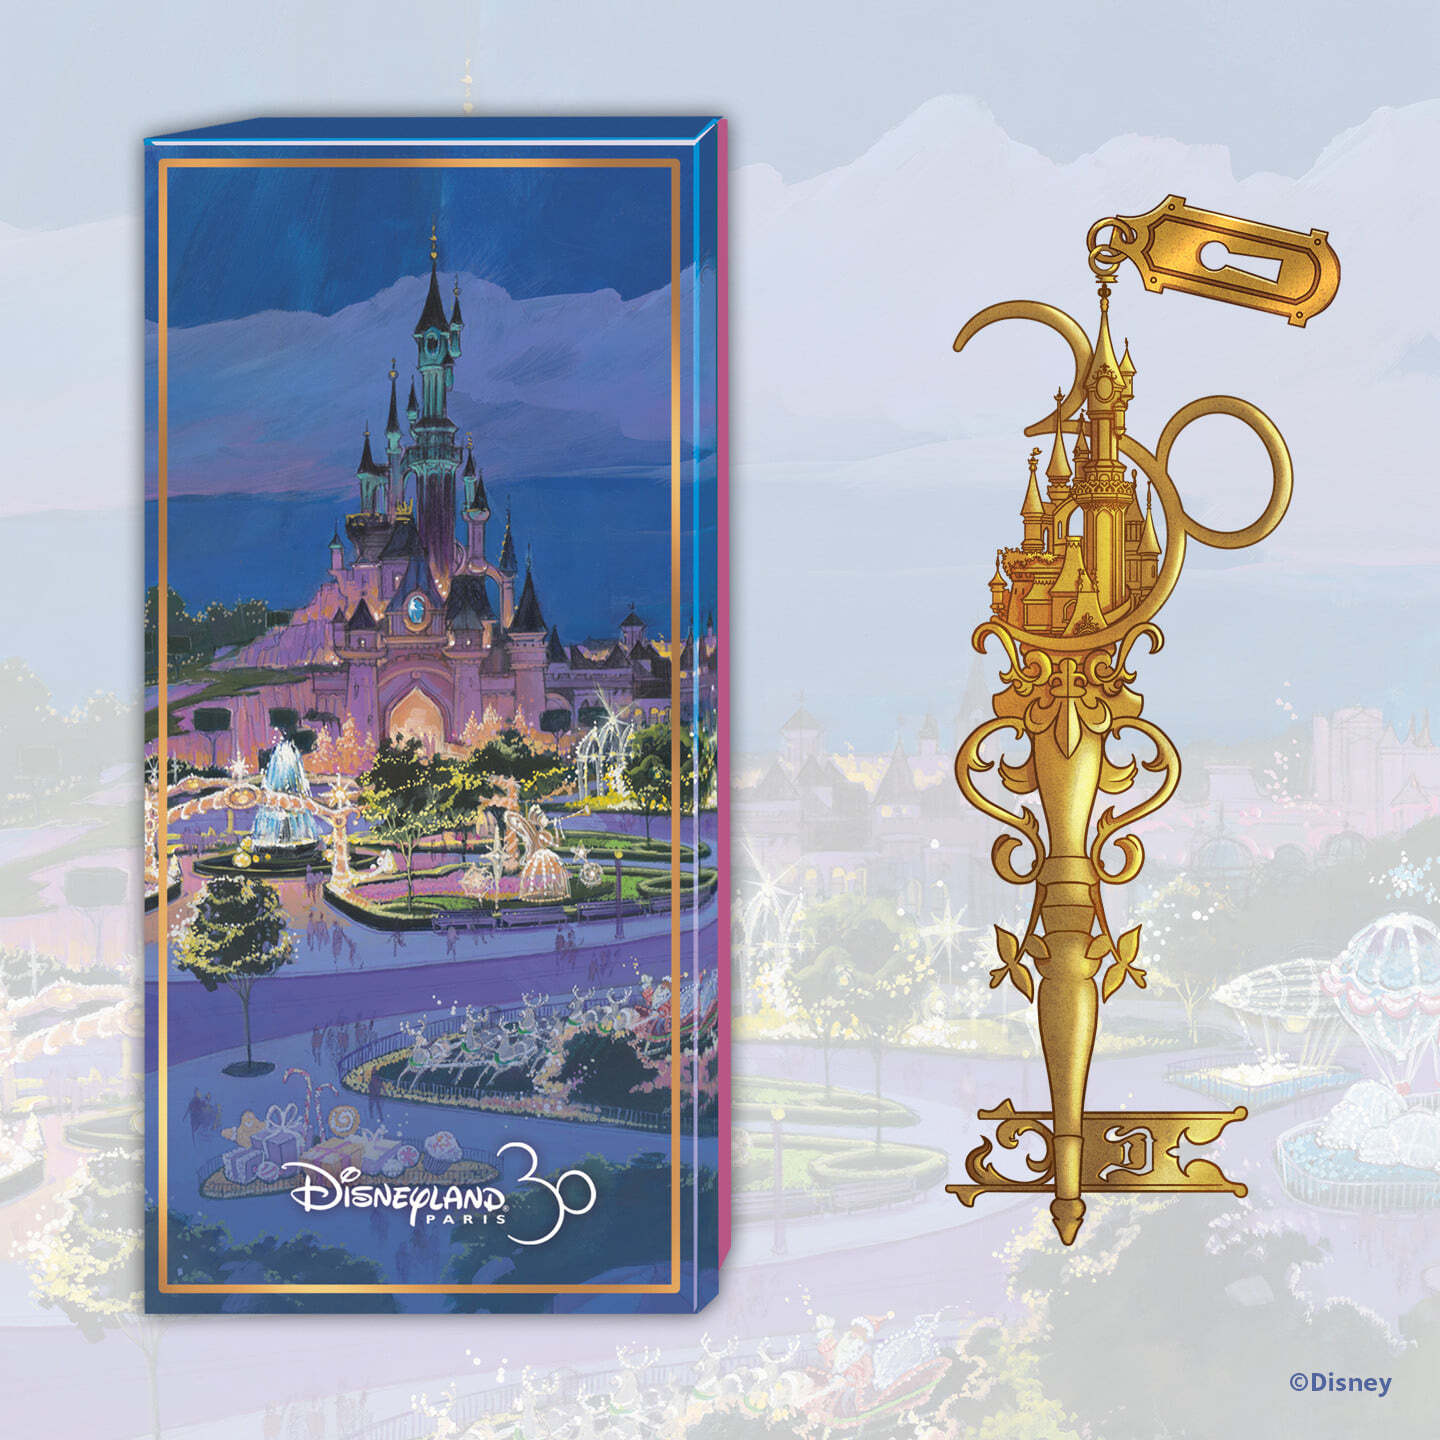 Articles des 30 ans de Disneyland paris  - Page 3 Iwij